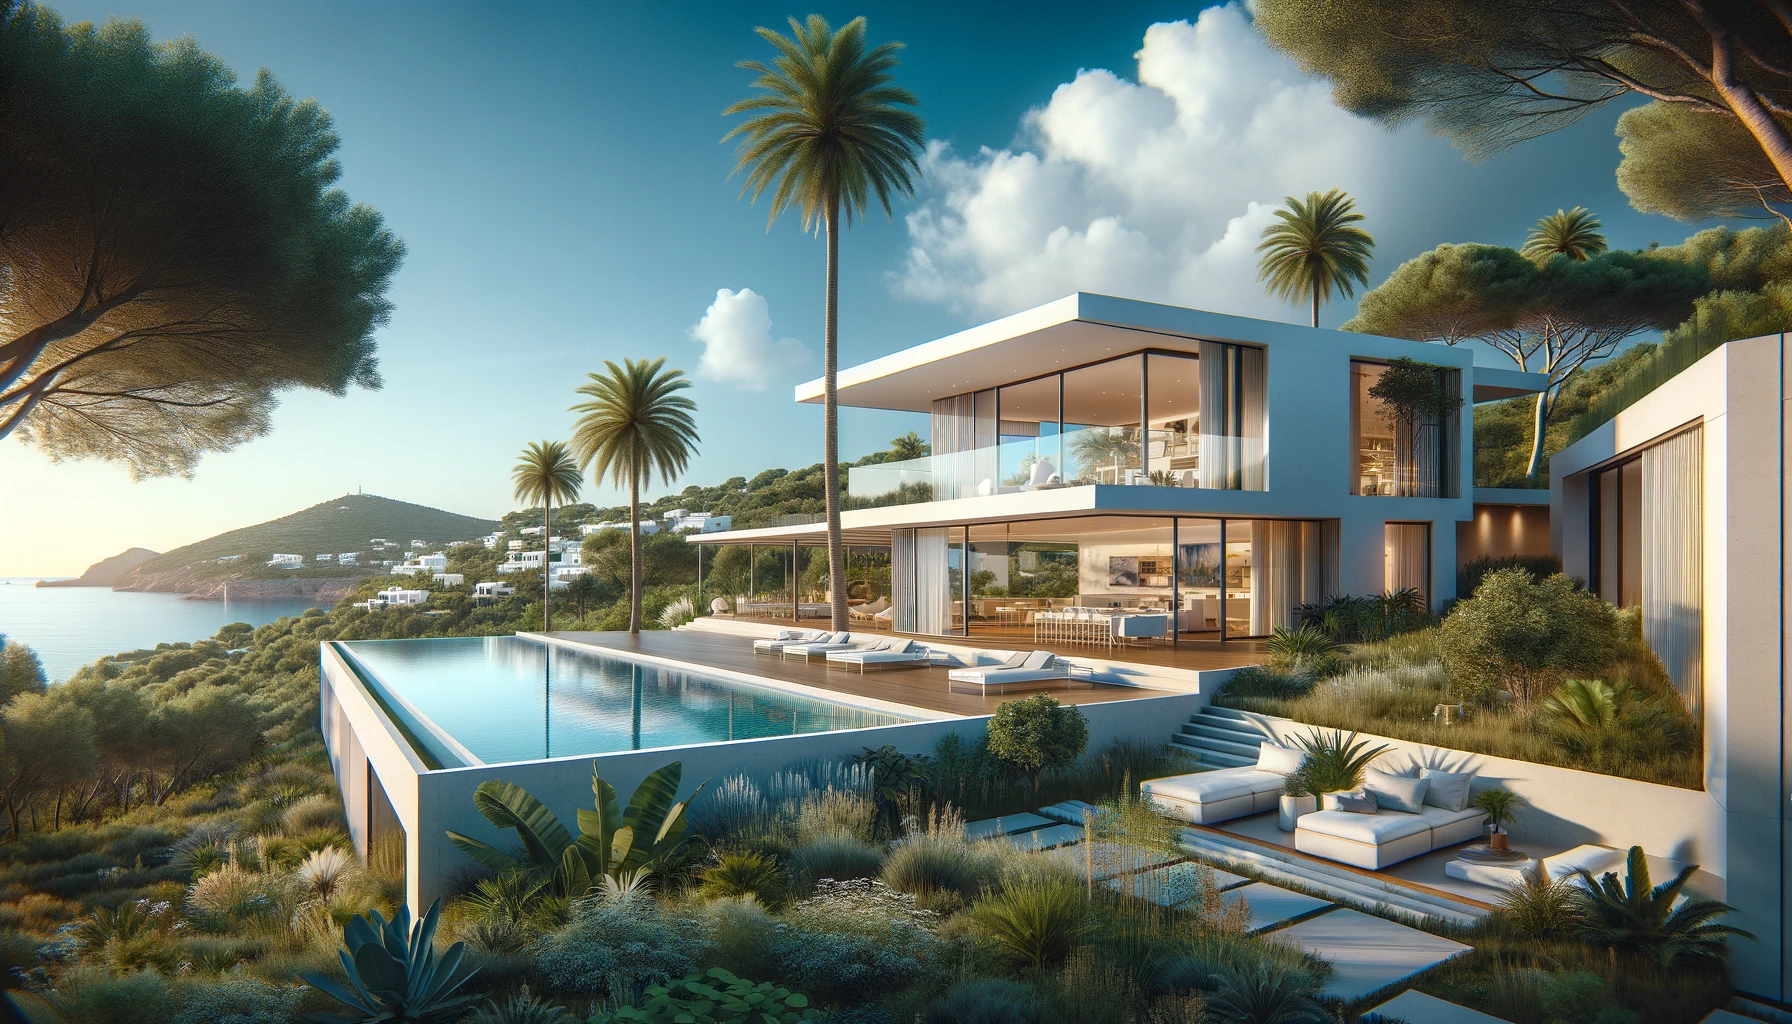 Comprar una casa en Ibiza